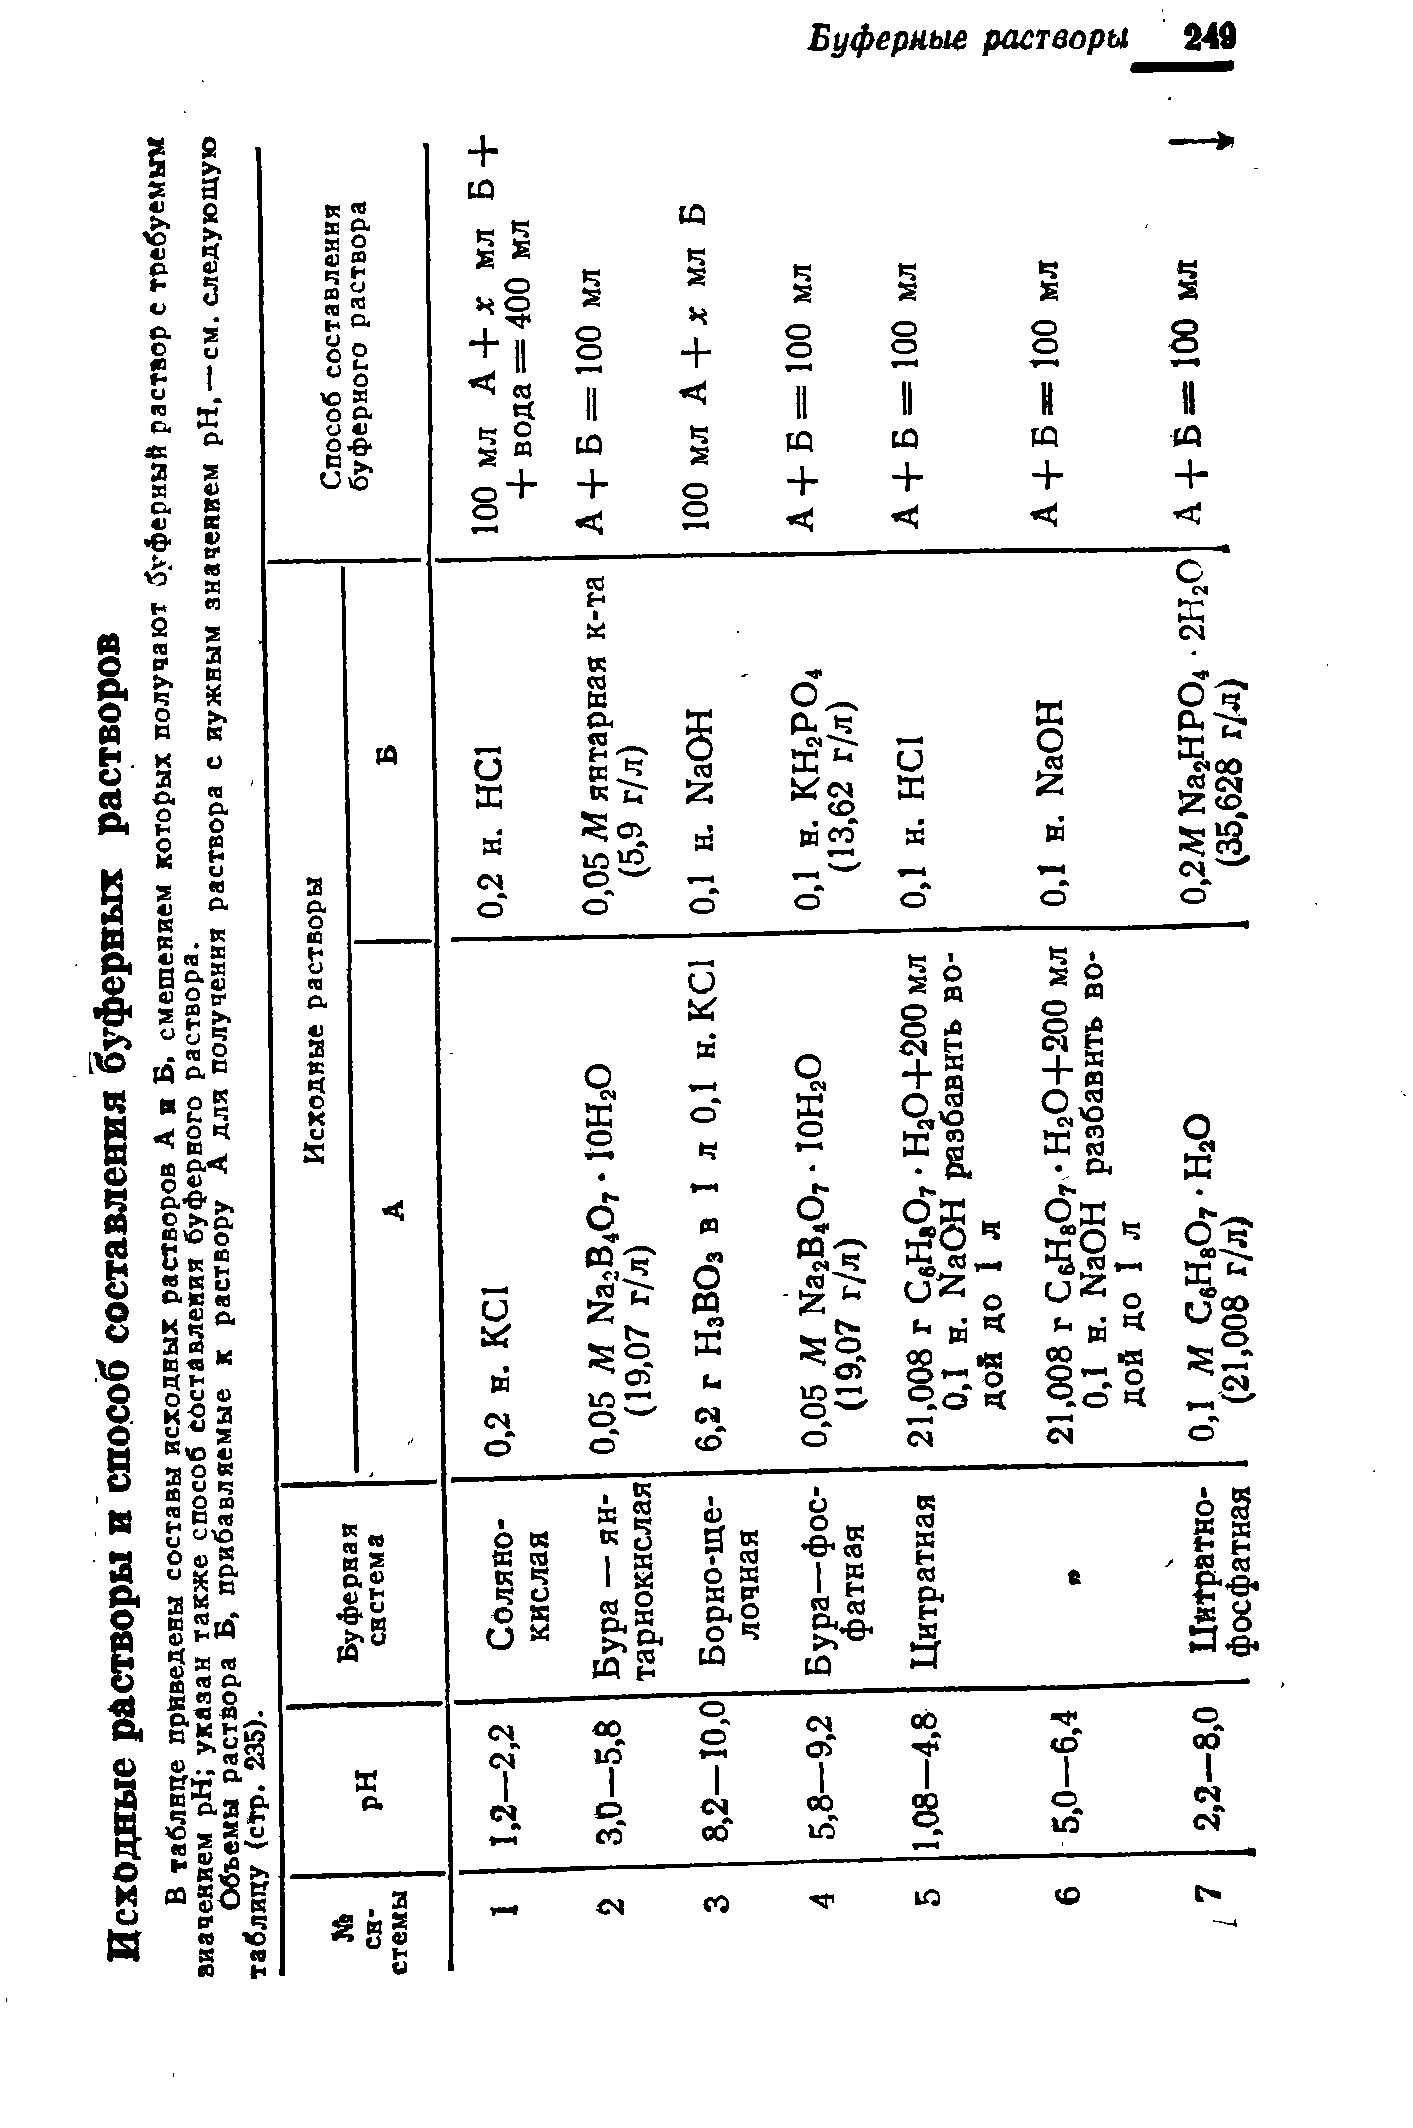 Объемы раствора Б, прибавляемые к раствору А для получения раствора с нужным значением pH, —см. следующую таблицу (сТр. 235).